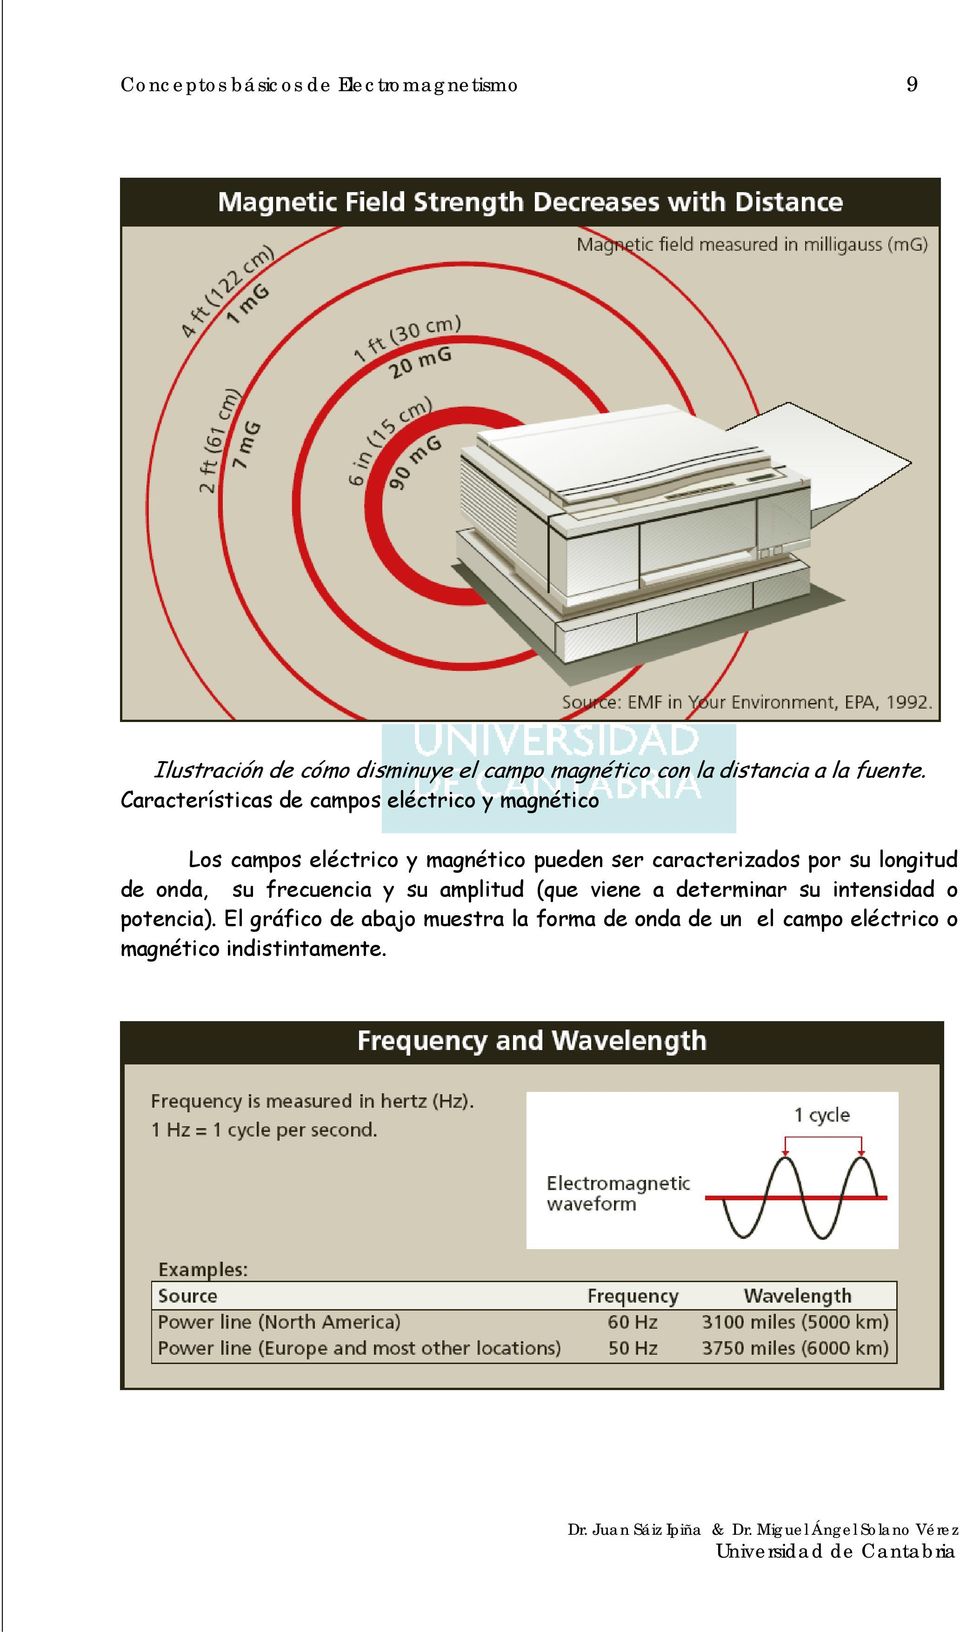 Características de campos eléctrico y magnético Los campos eléctrico y magnético pueden ser caracterizados